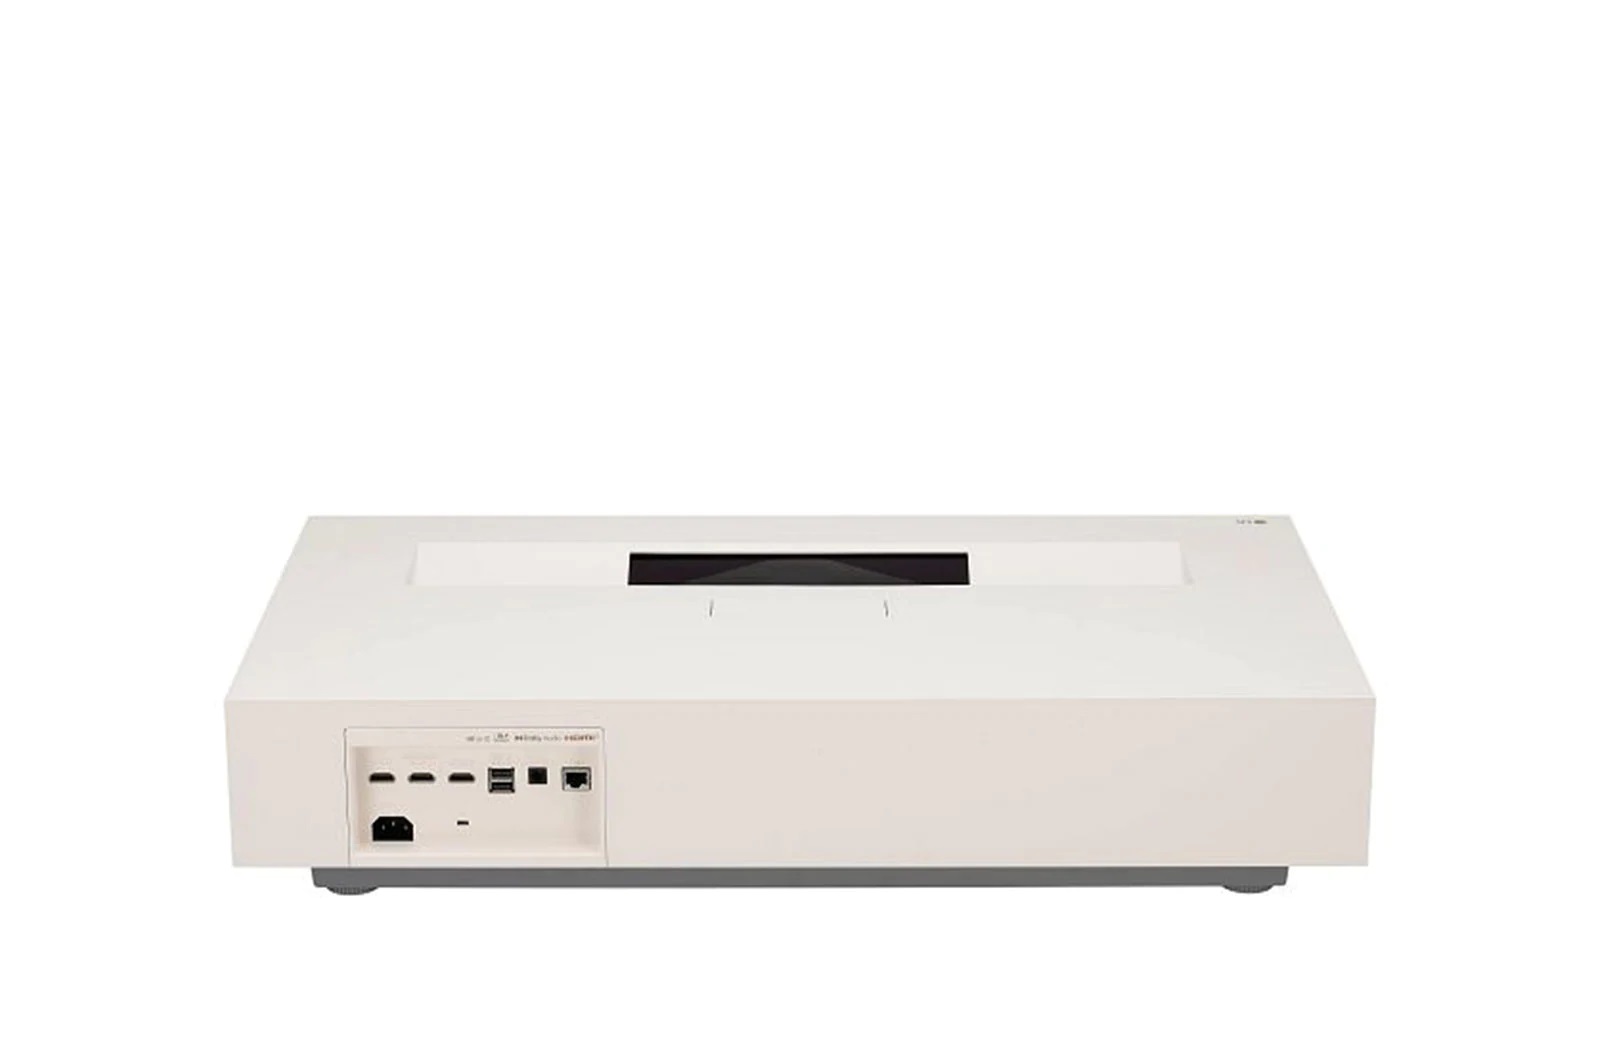 LG projektor CinemaBeam HU915QE - laser,  3840x2160,  HDR10,  3x HDMI,  2x USB-A,  RJ45,  speakers, 